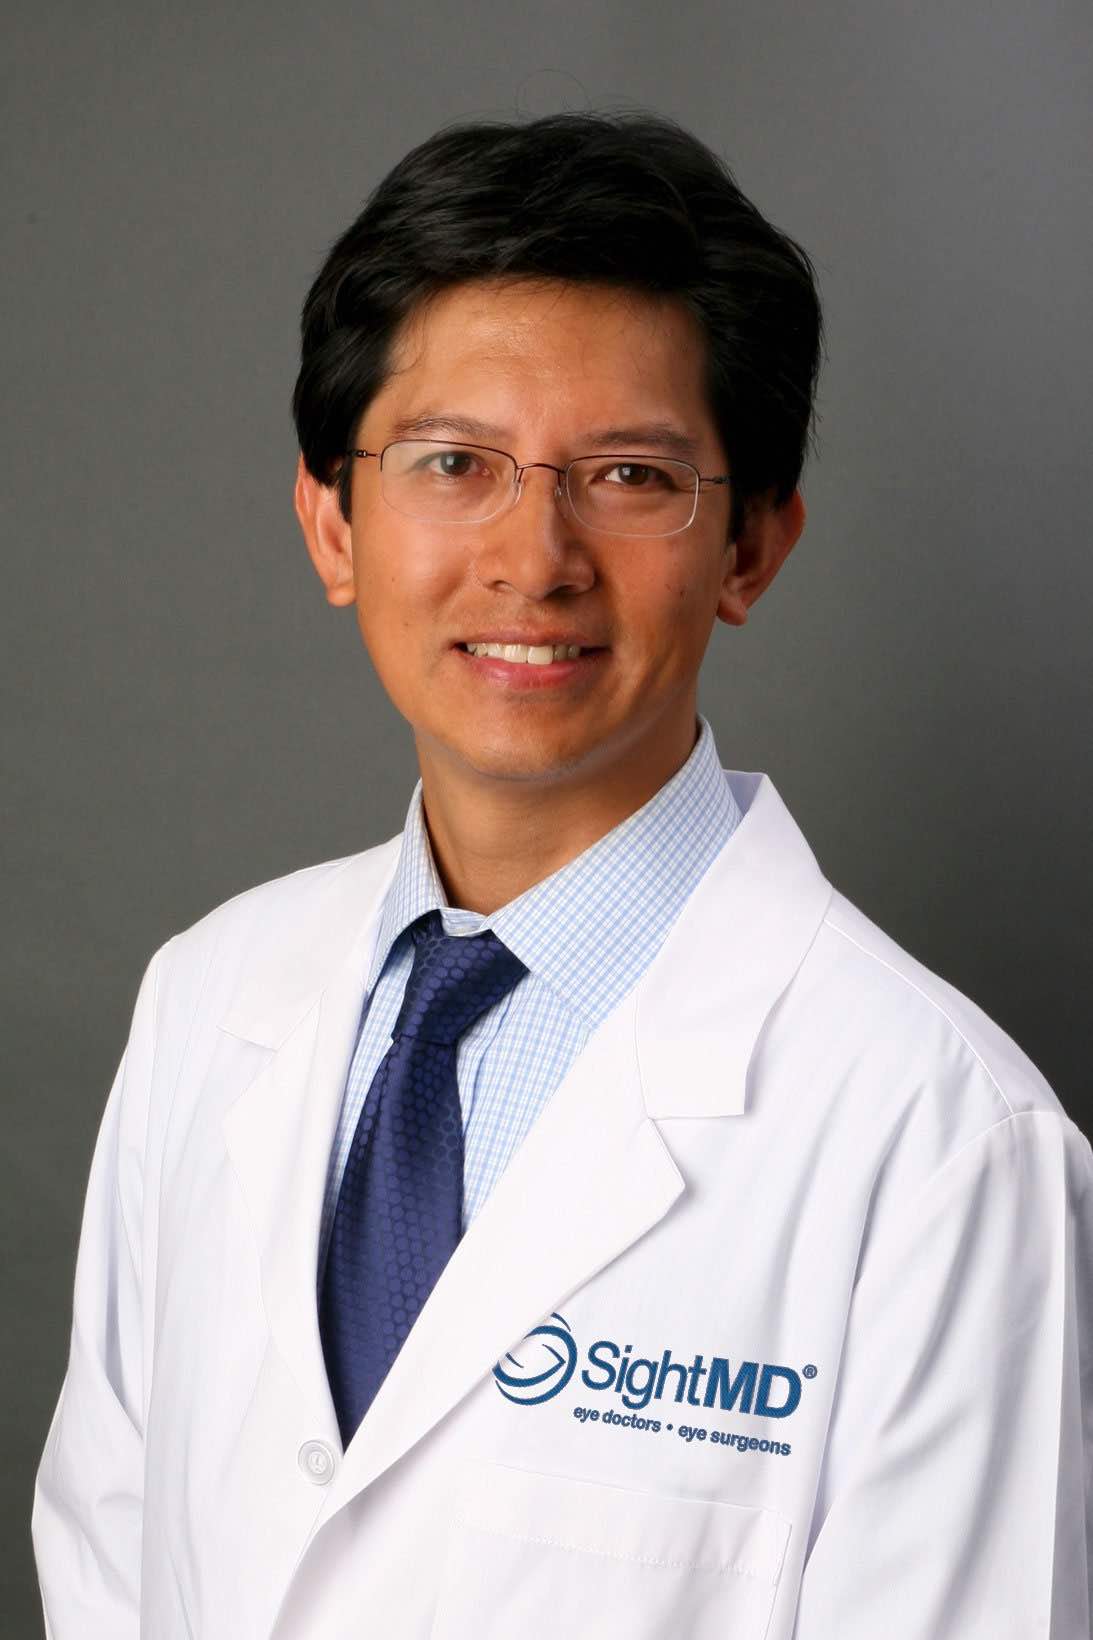 David Immanuel, MD, PhD